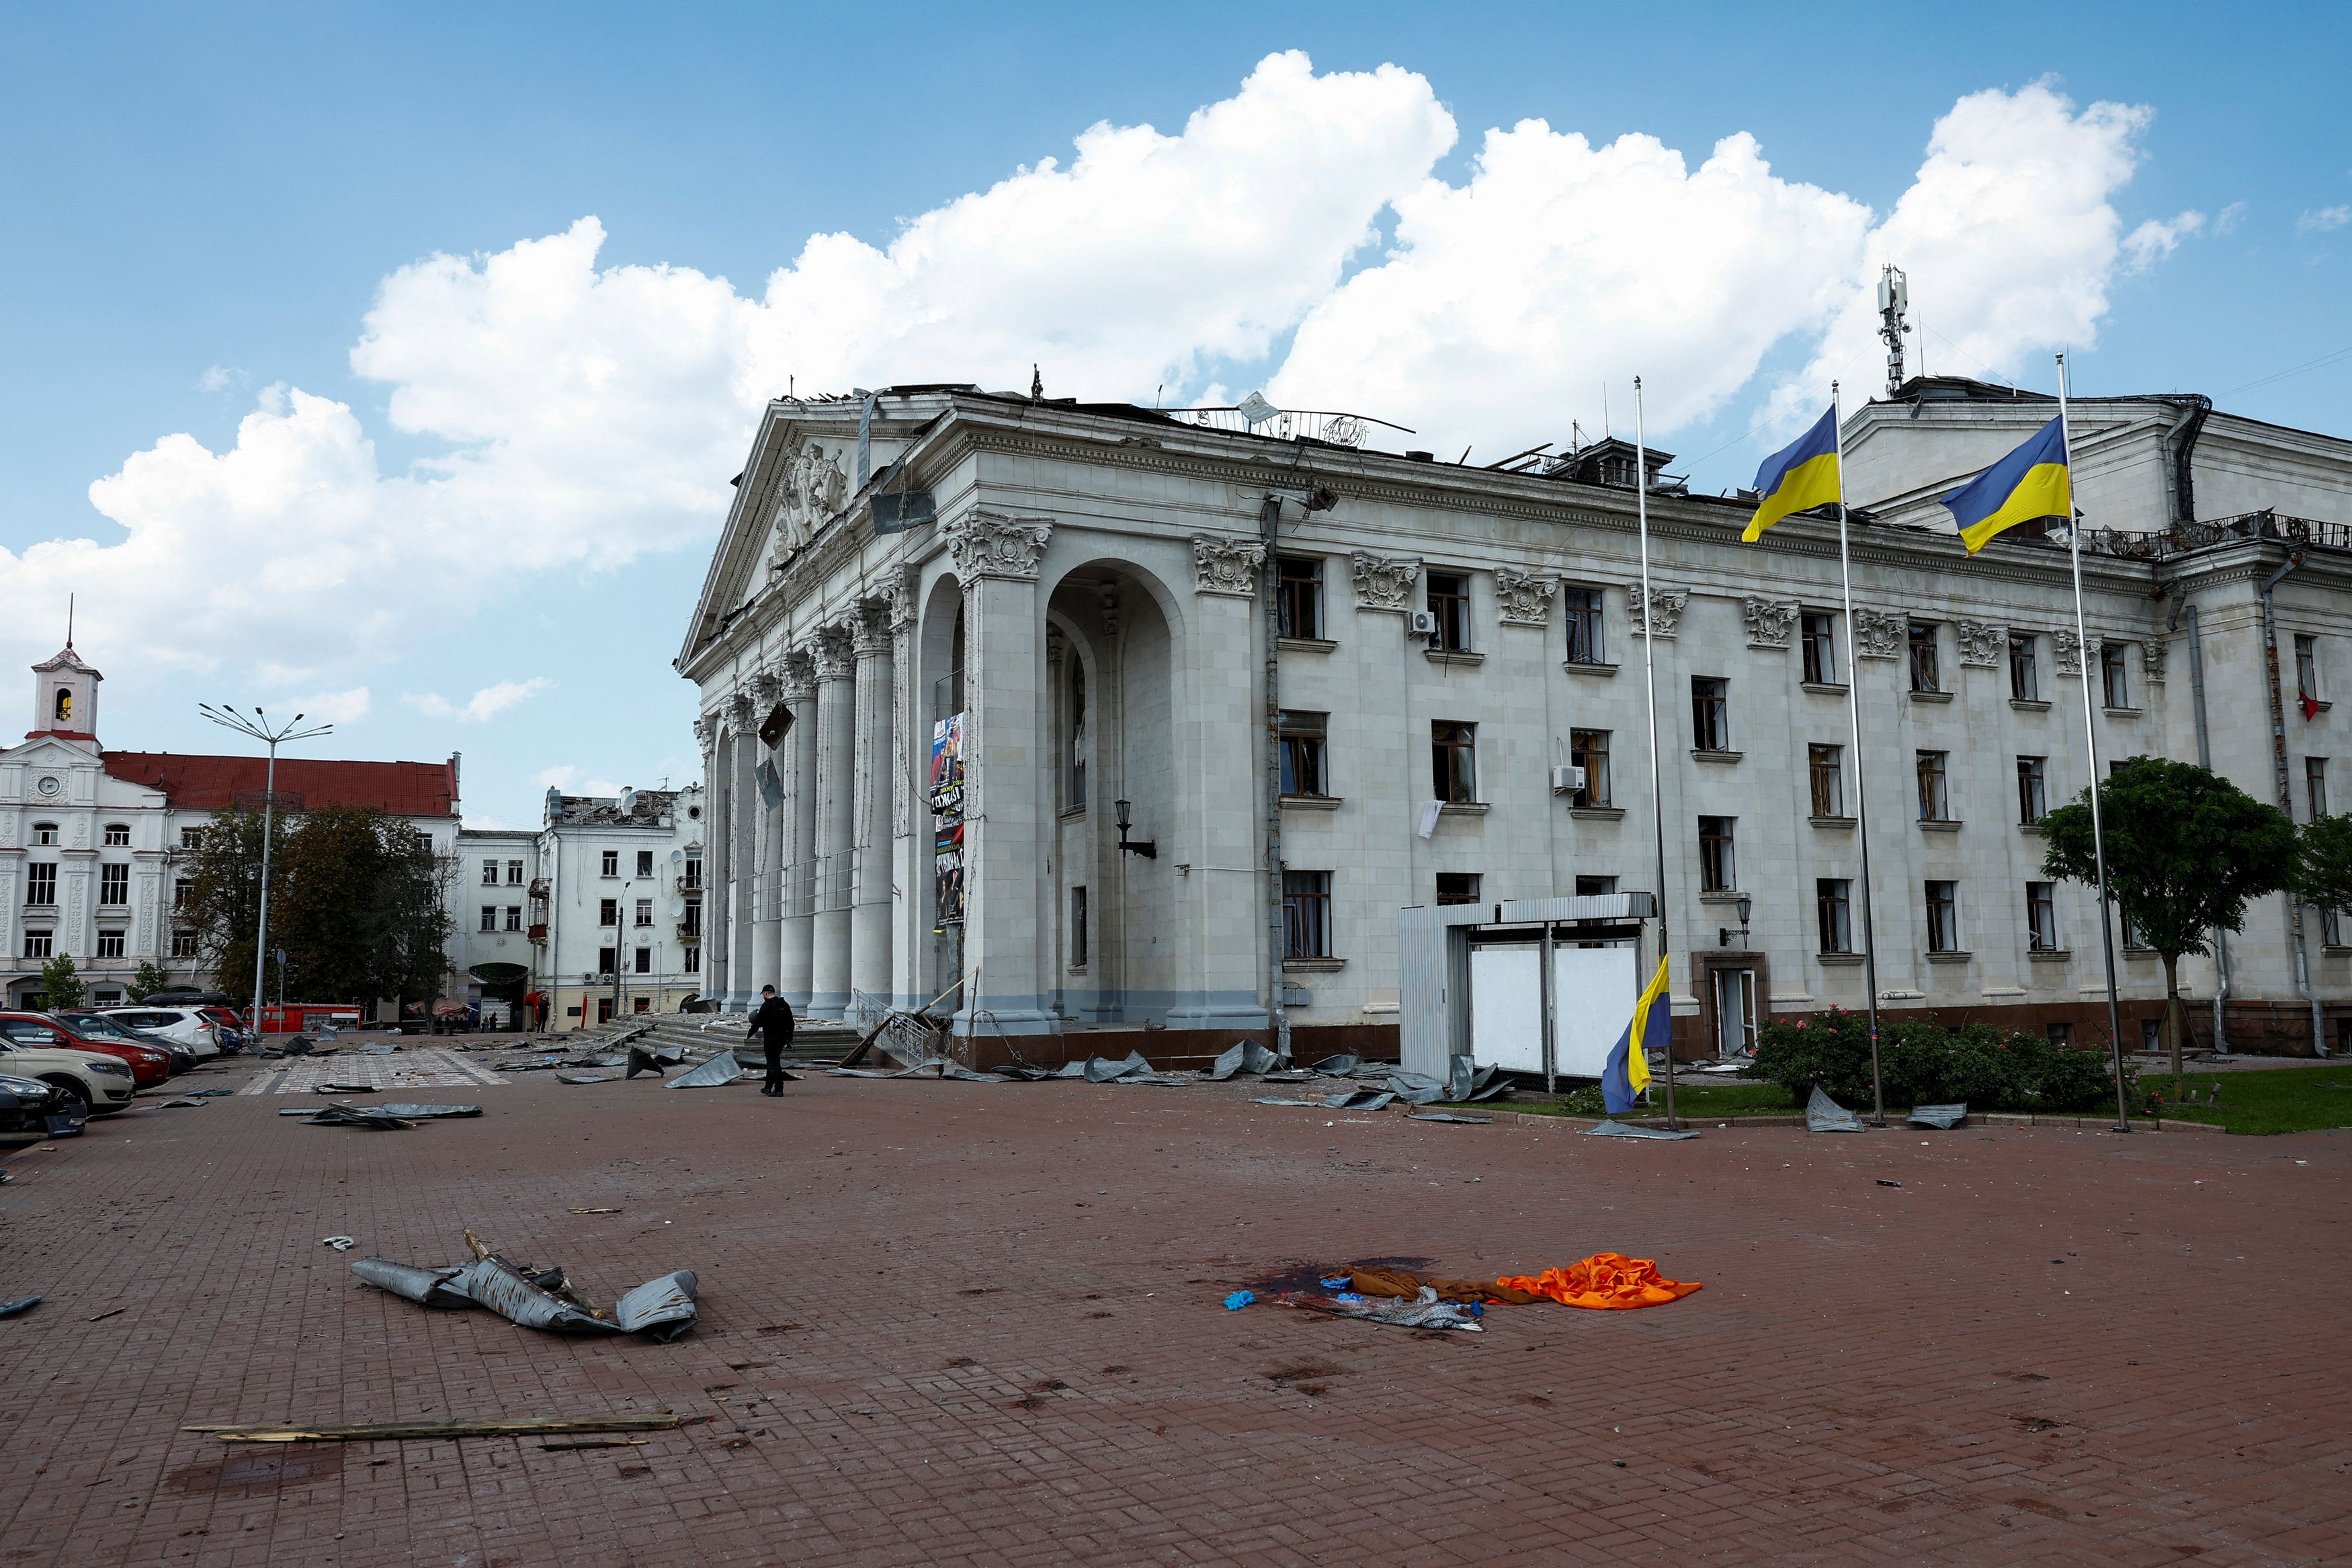 Ουκρανία: Επτά οι νεκροί από το ρωσικό πυραυλικό χτύπημα στο Τσερνίχιβ - Αυξάνεται ο αριθμός των τραυματιών